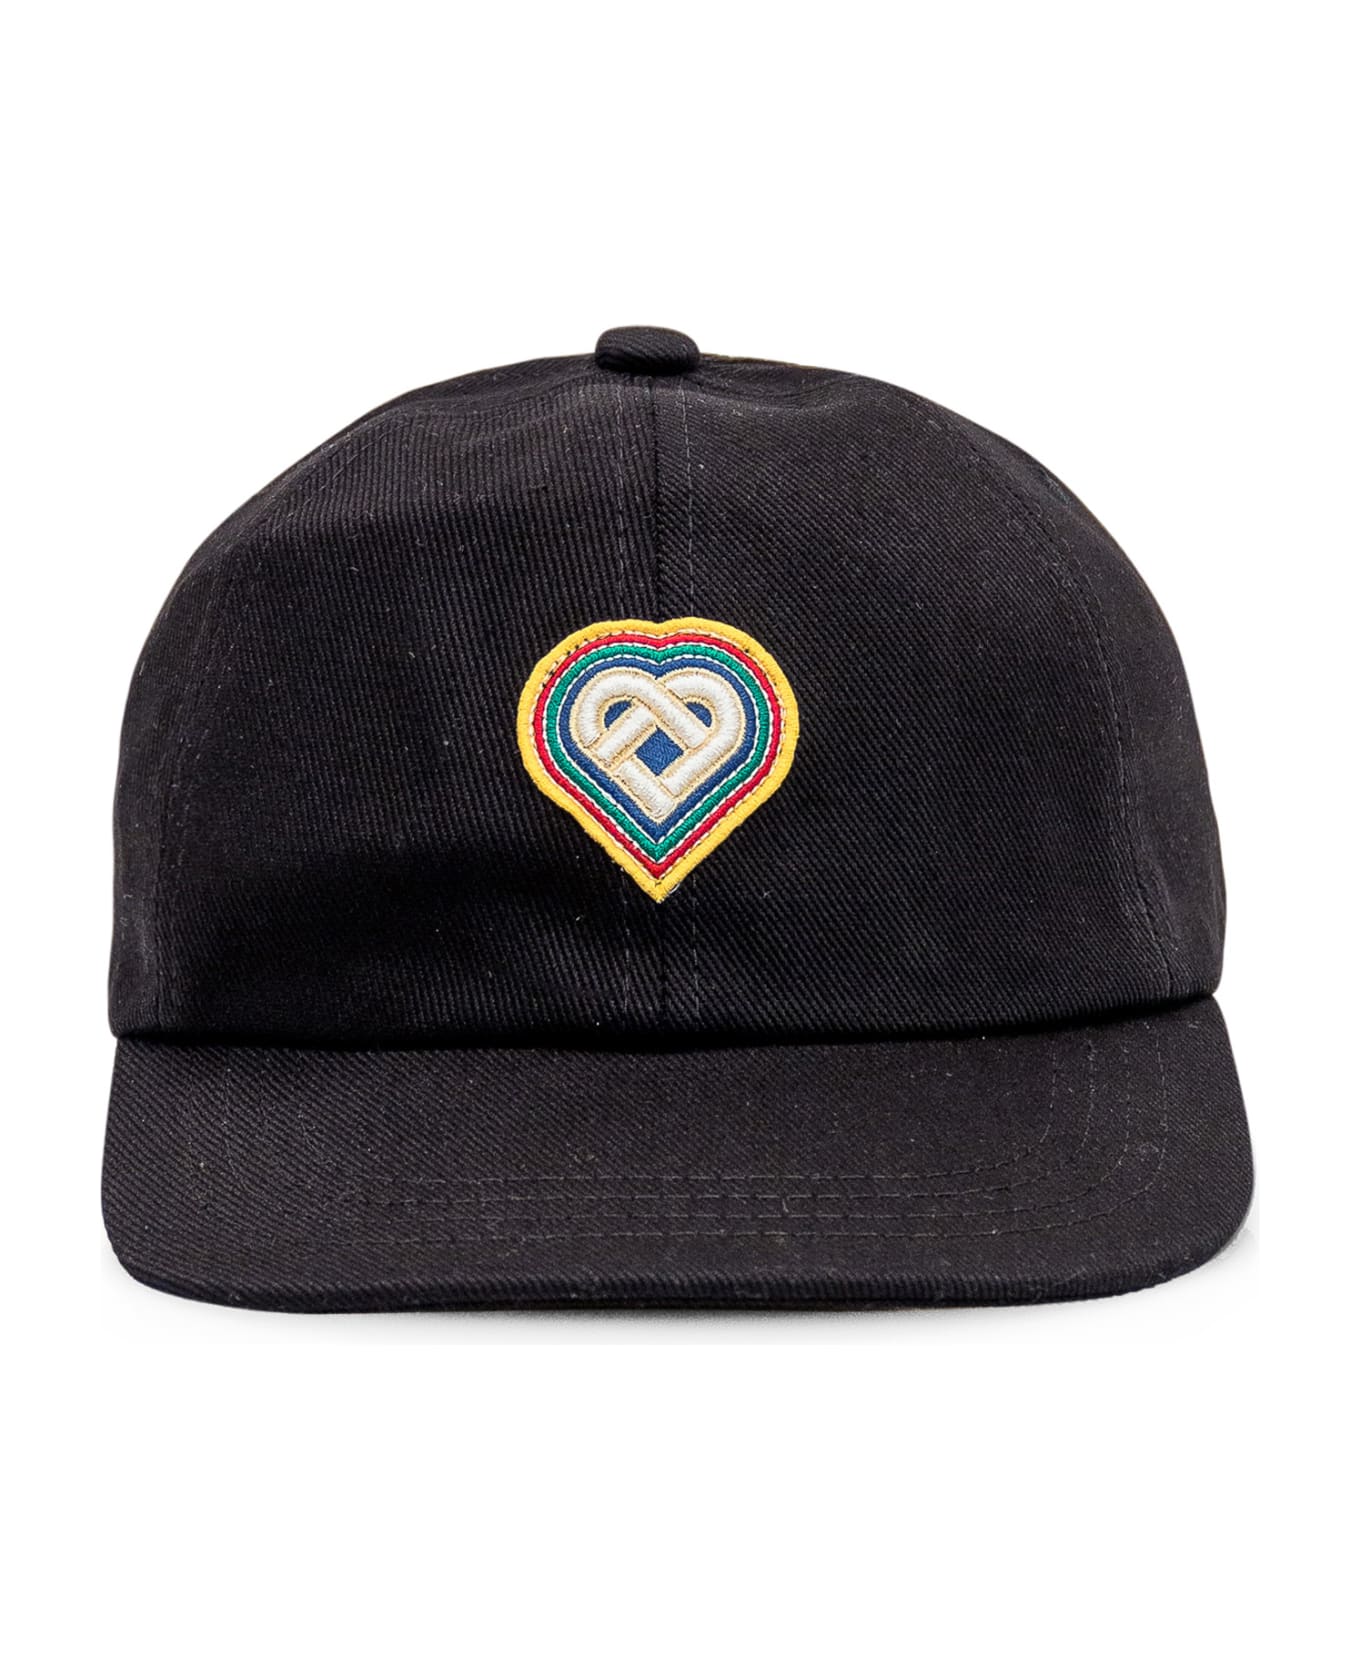 Casablanca Hat With Logo - Black